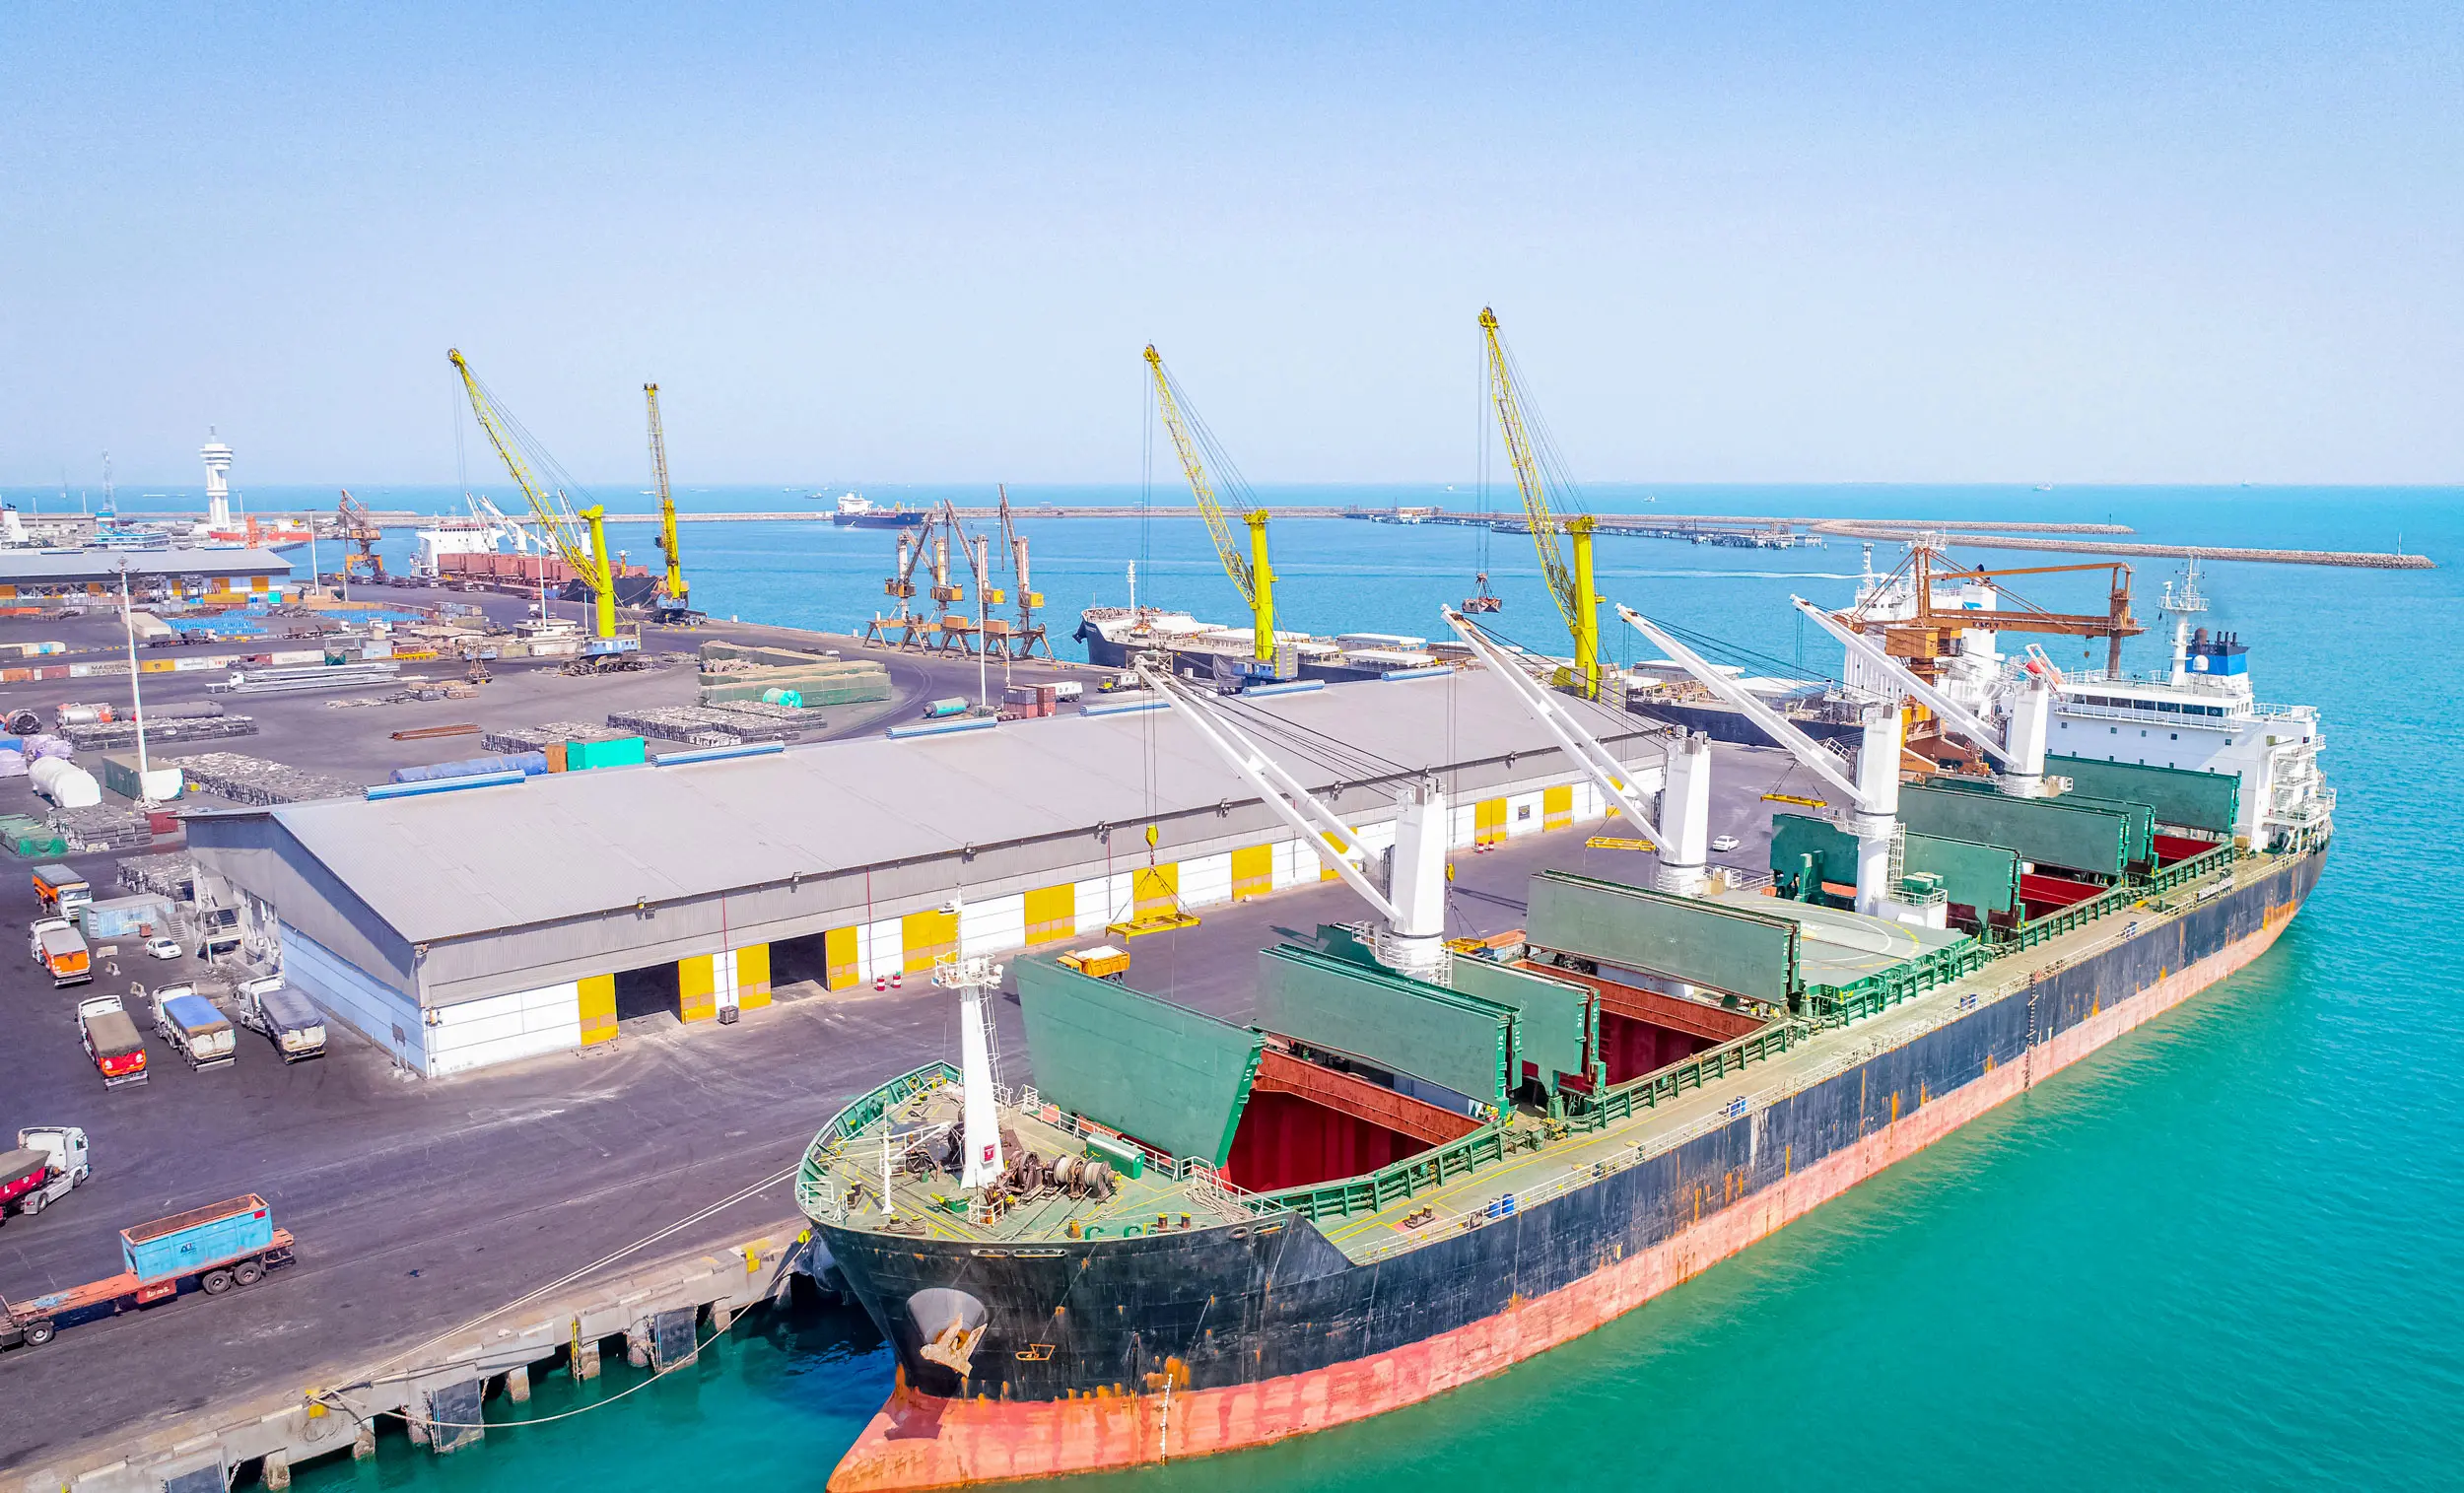 بندر شهید رجایی می تواند پایگاهی برای تجارت عمان باشد 